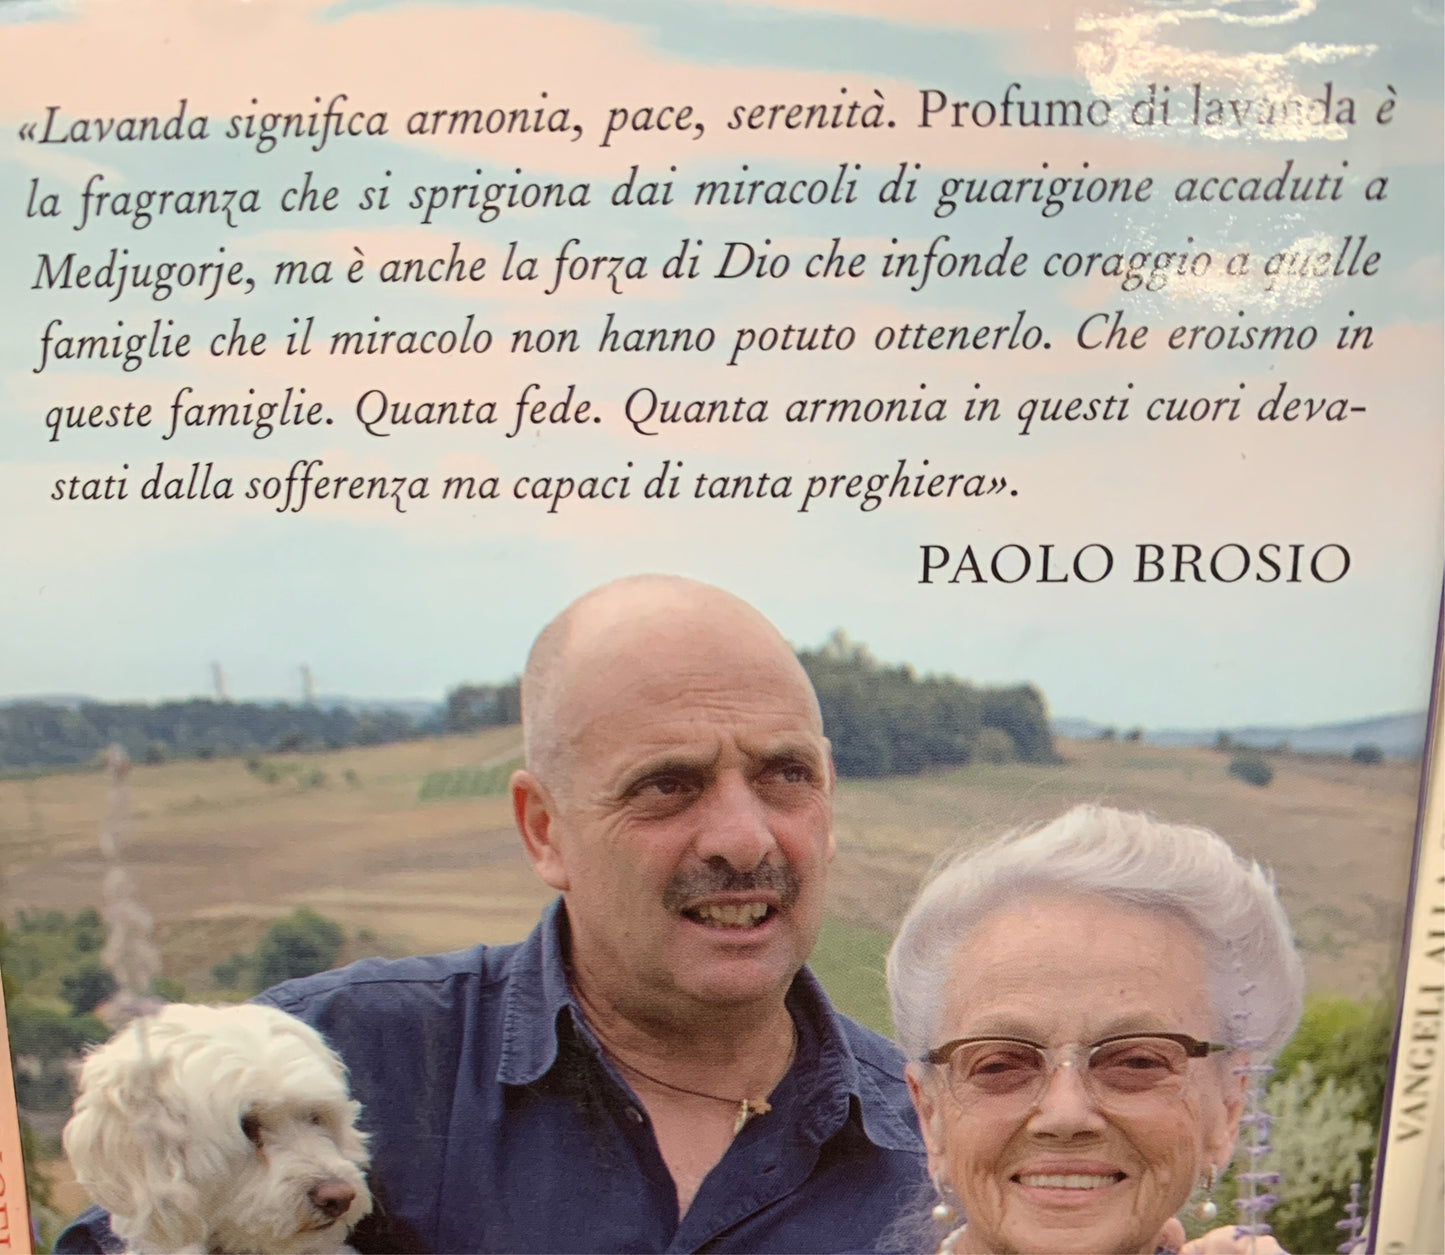 Paolo Brosio - Profumo di lavanda - Medjugorje la storia continua